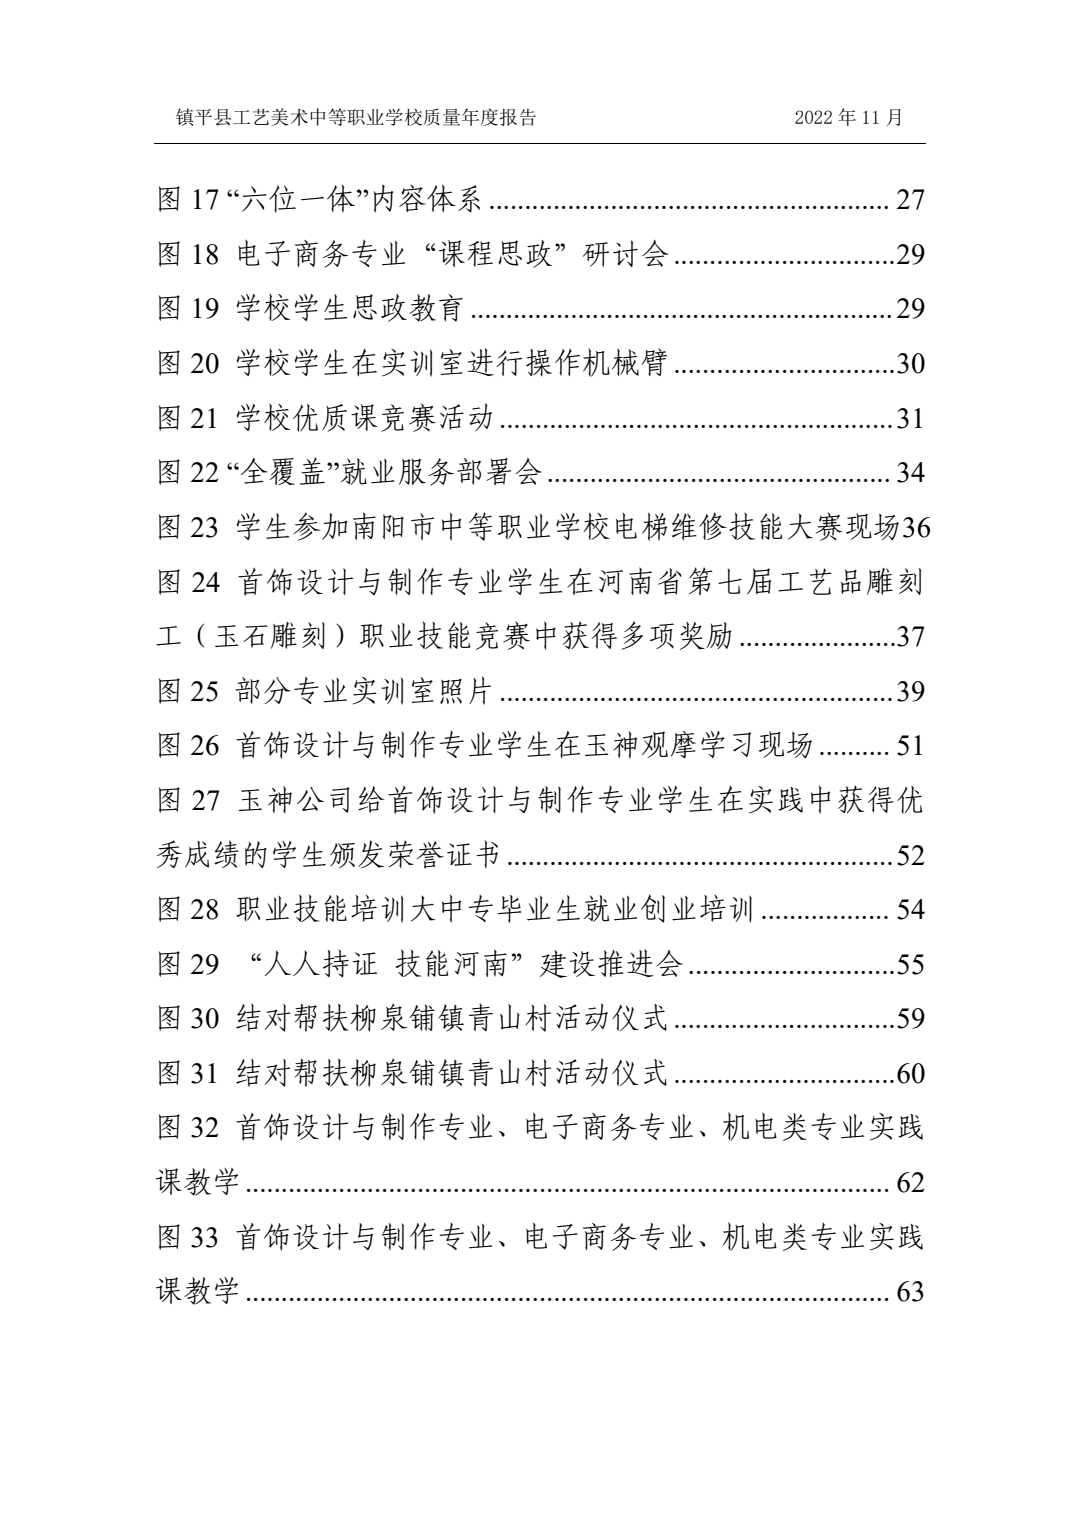 镇平县工艺美术中等职业学校 质量年度报告 (2023 年)